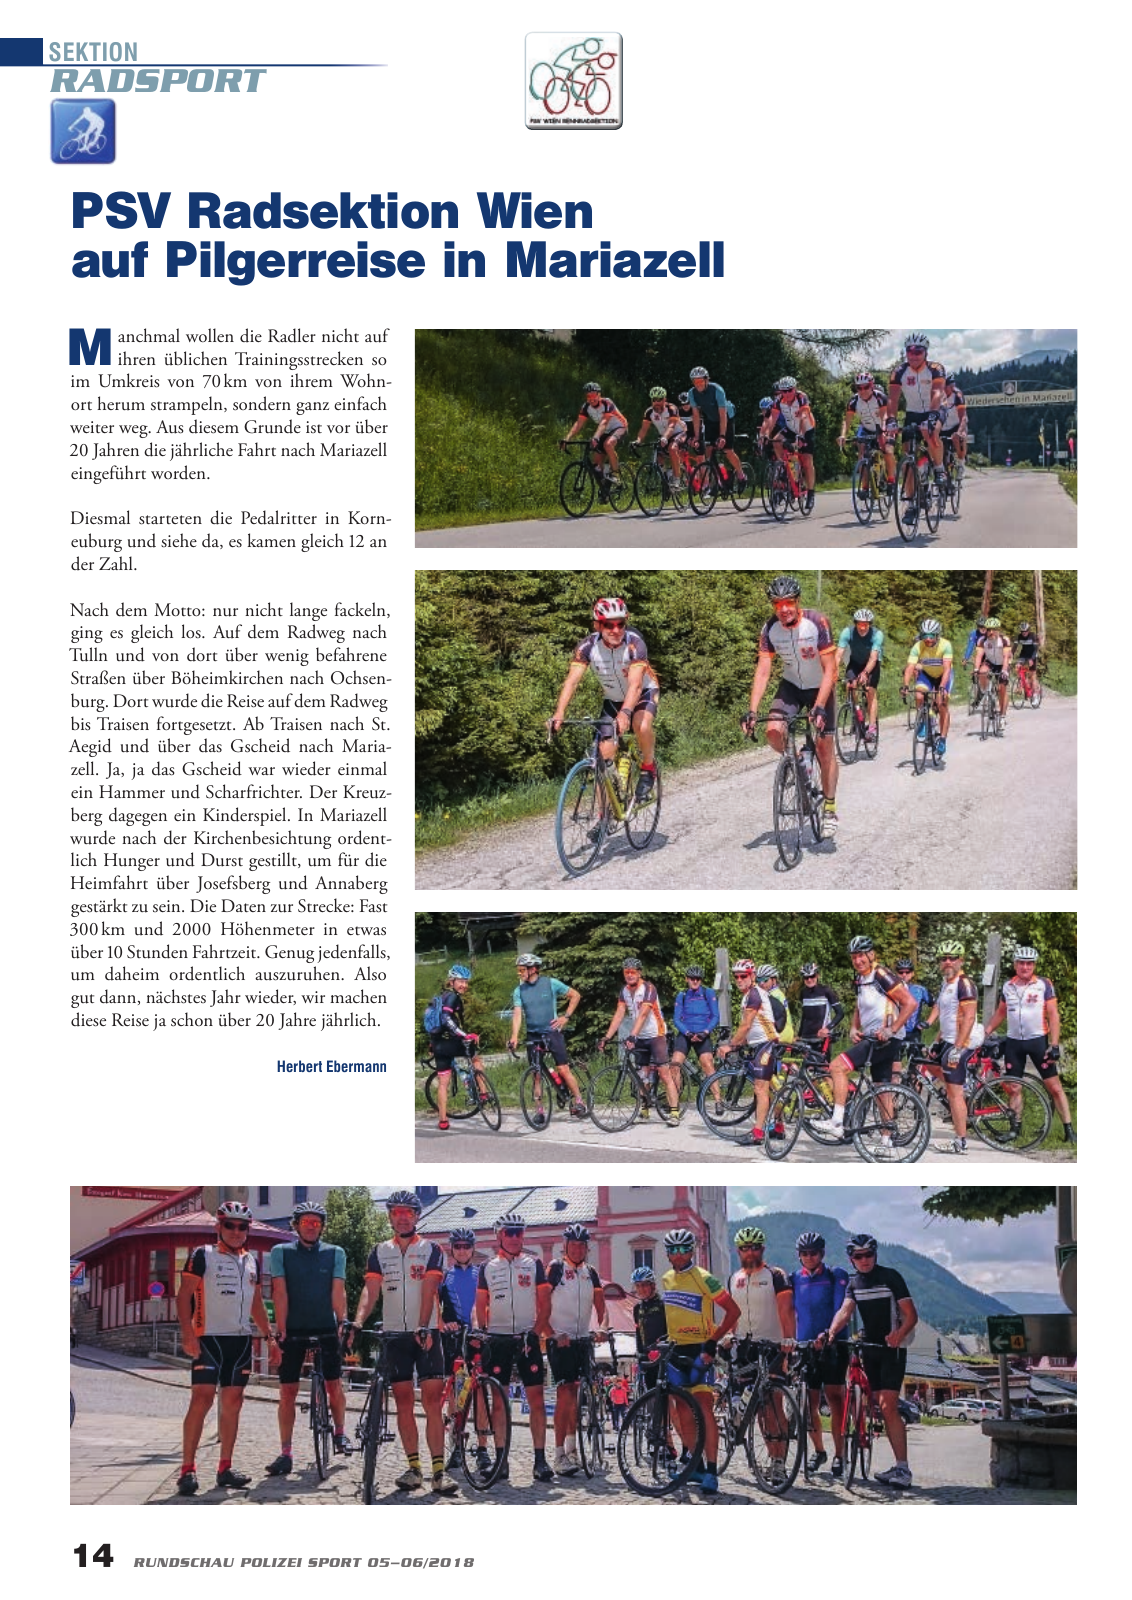 Vorschau Rundschau Polizei Sport 05-06/2018 Seite 14